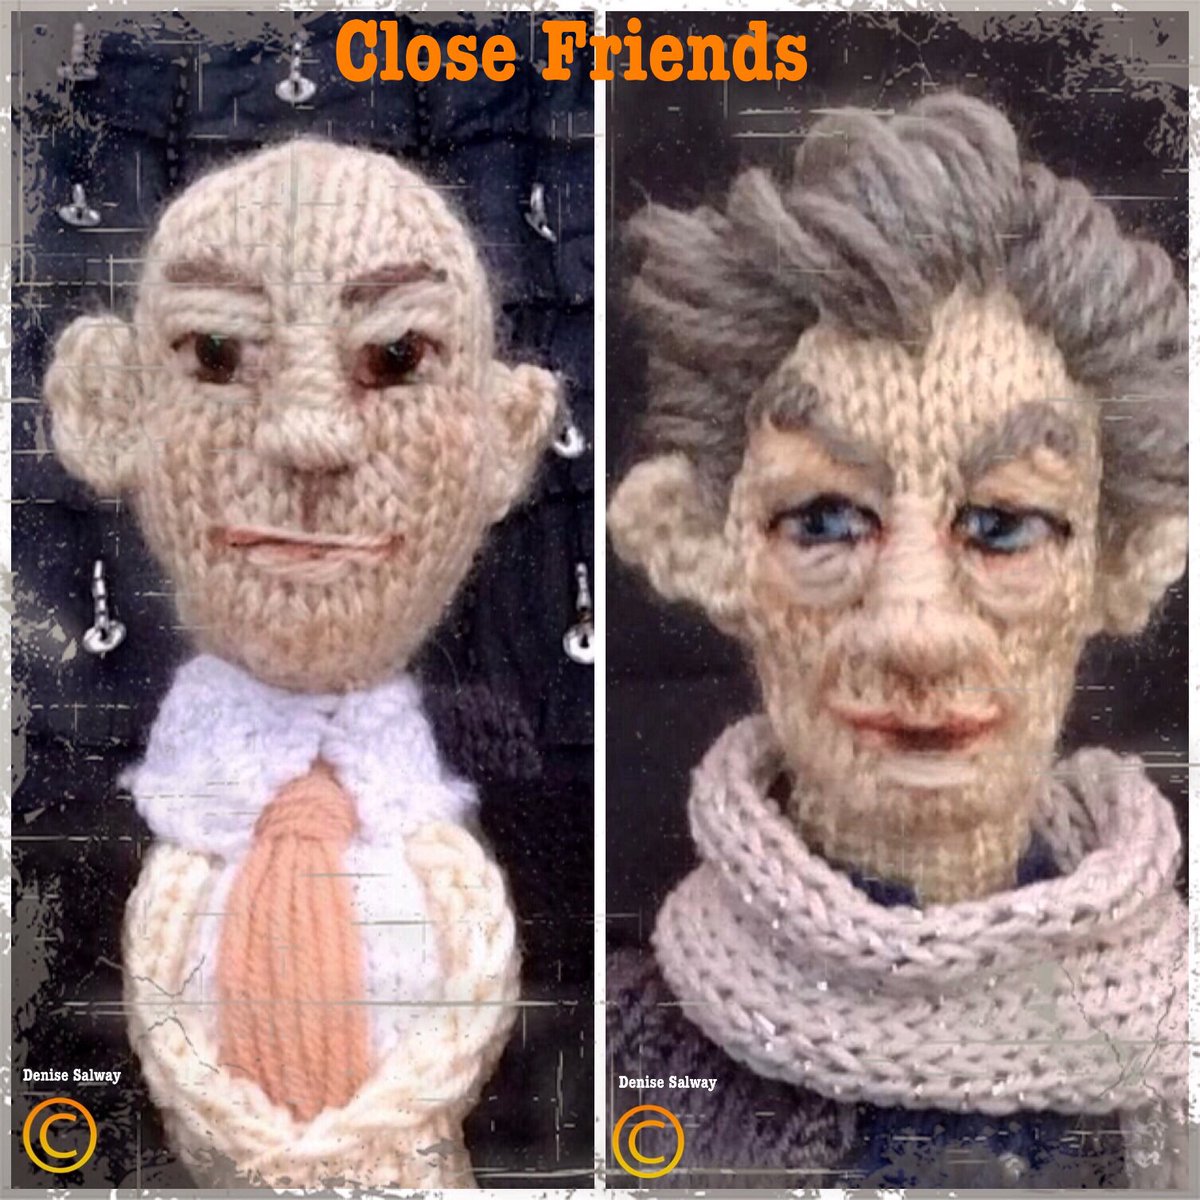 #SirPatrickStewart #SirIanMcKellen #closeup #knitted #celebs #icons tribute #closefriends #designs #denise #salway